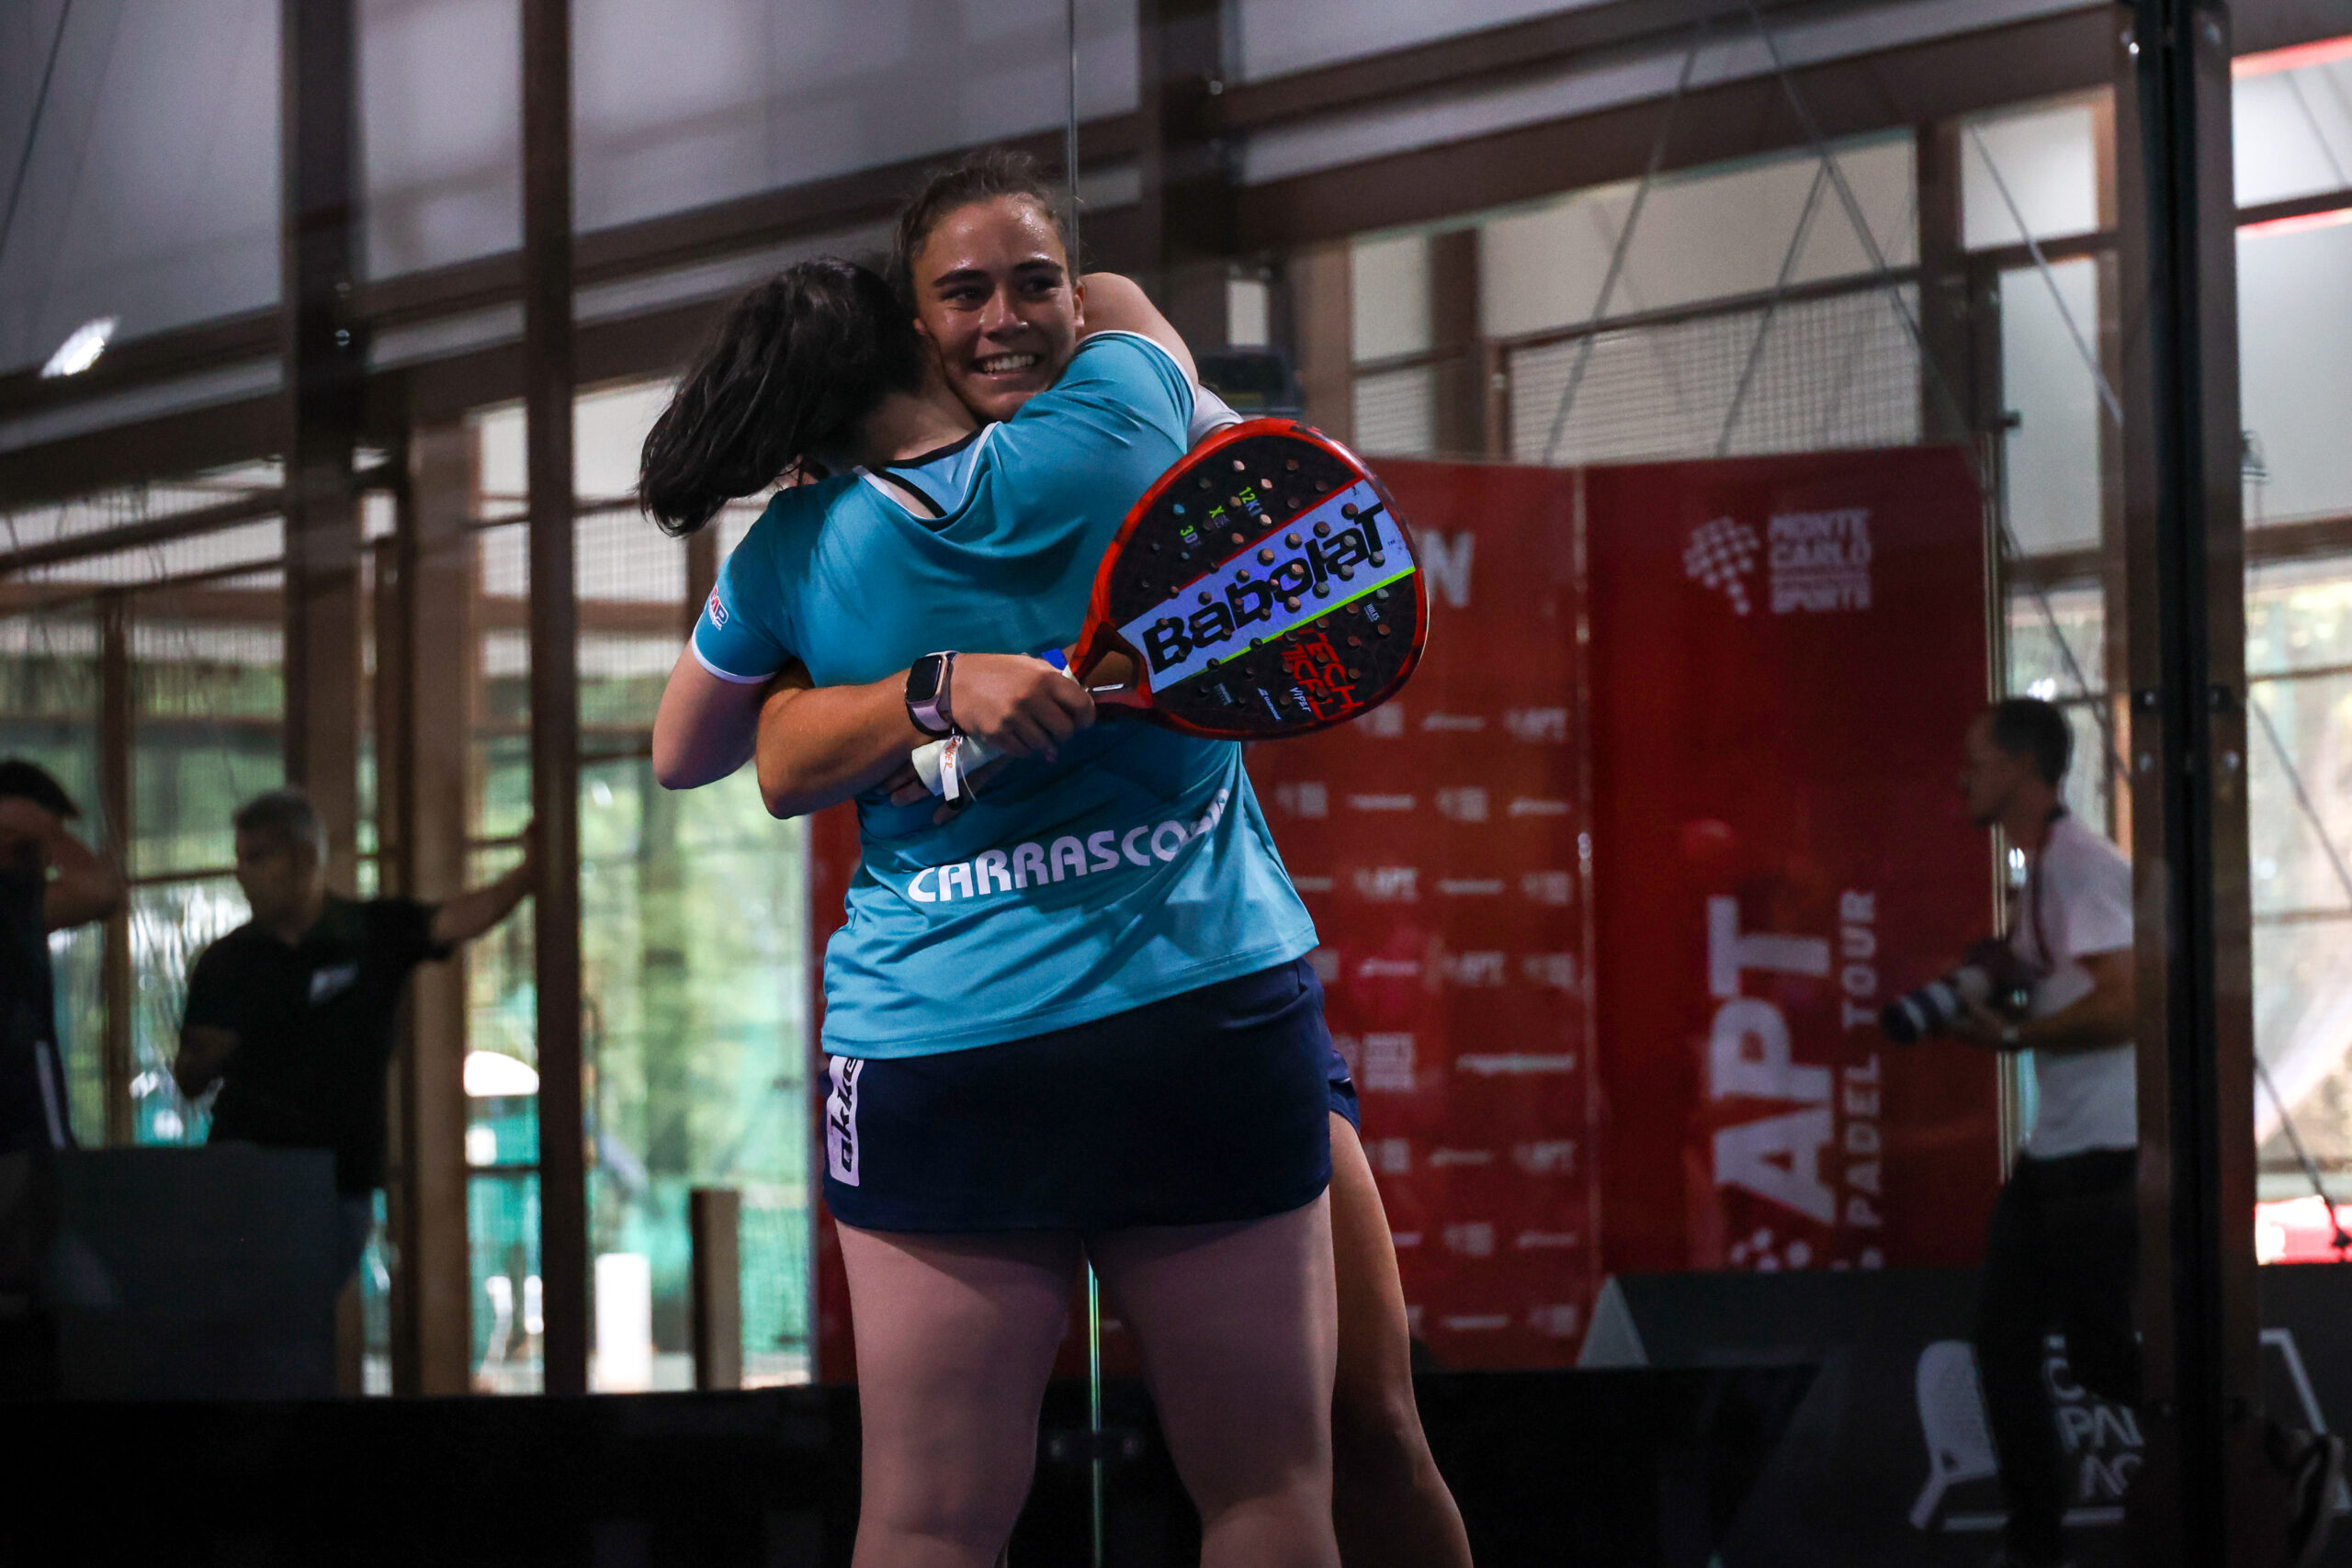 APT Oeiras Open – Carrascosa och Martinez mästare